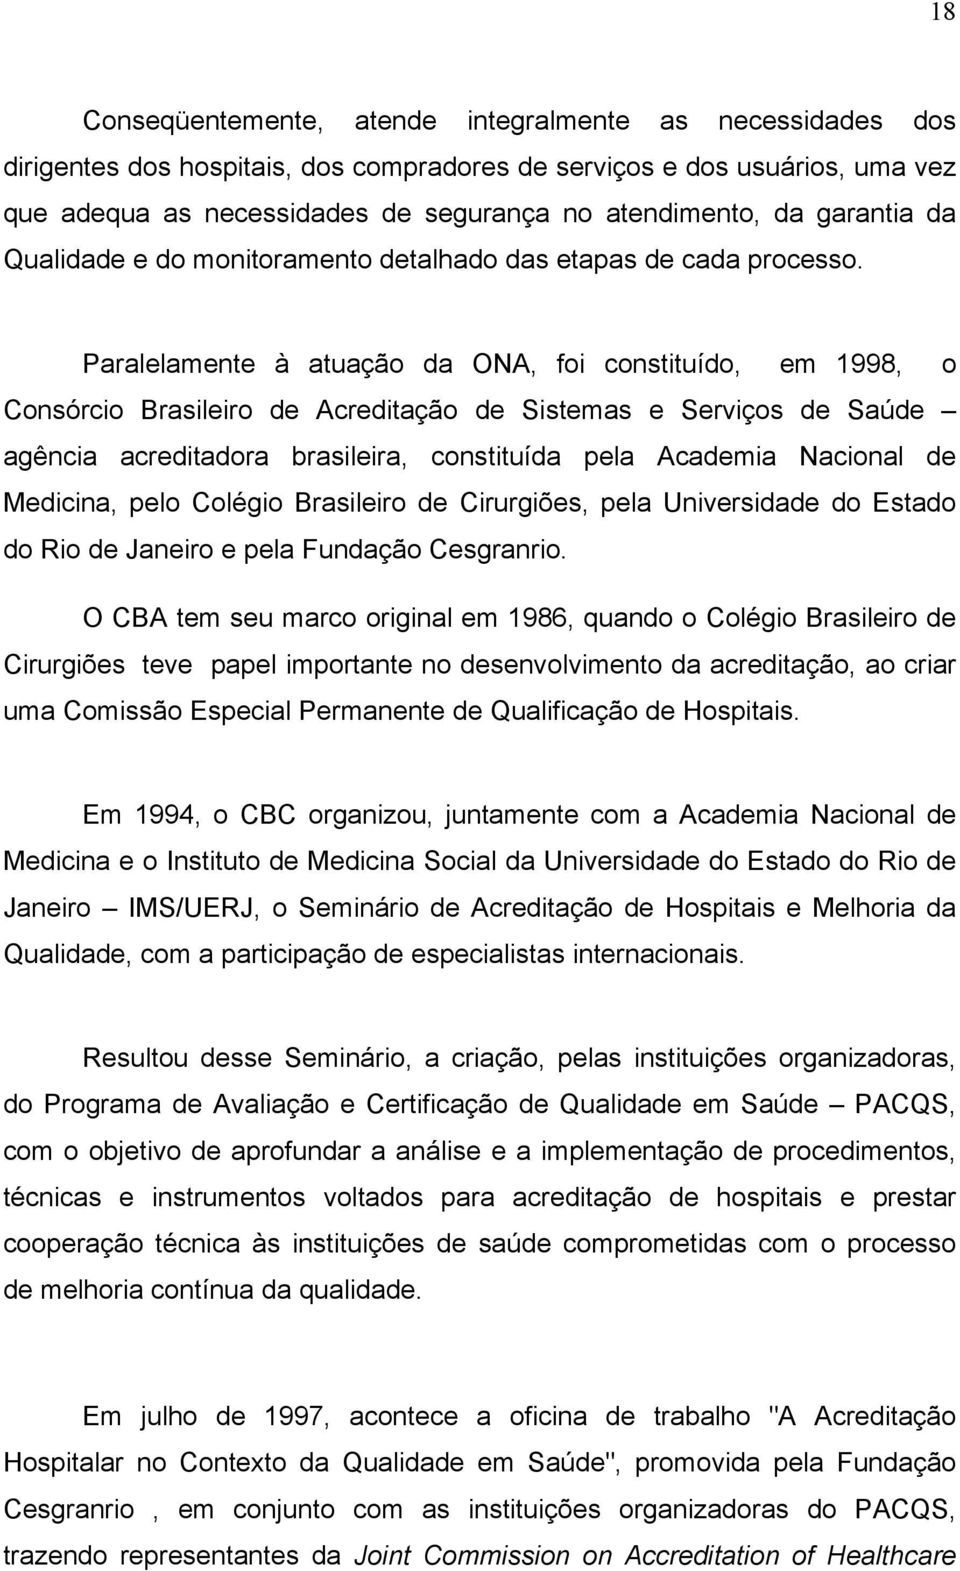 Paralelamente à atuação da ONA, foi constituído, em 1998, o Consórcio Brasileiro de Acreditação de Sistemas e Serviços de Saúde agência acreditadora brasileira, constituída pela Academia Nacional de